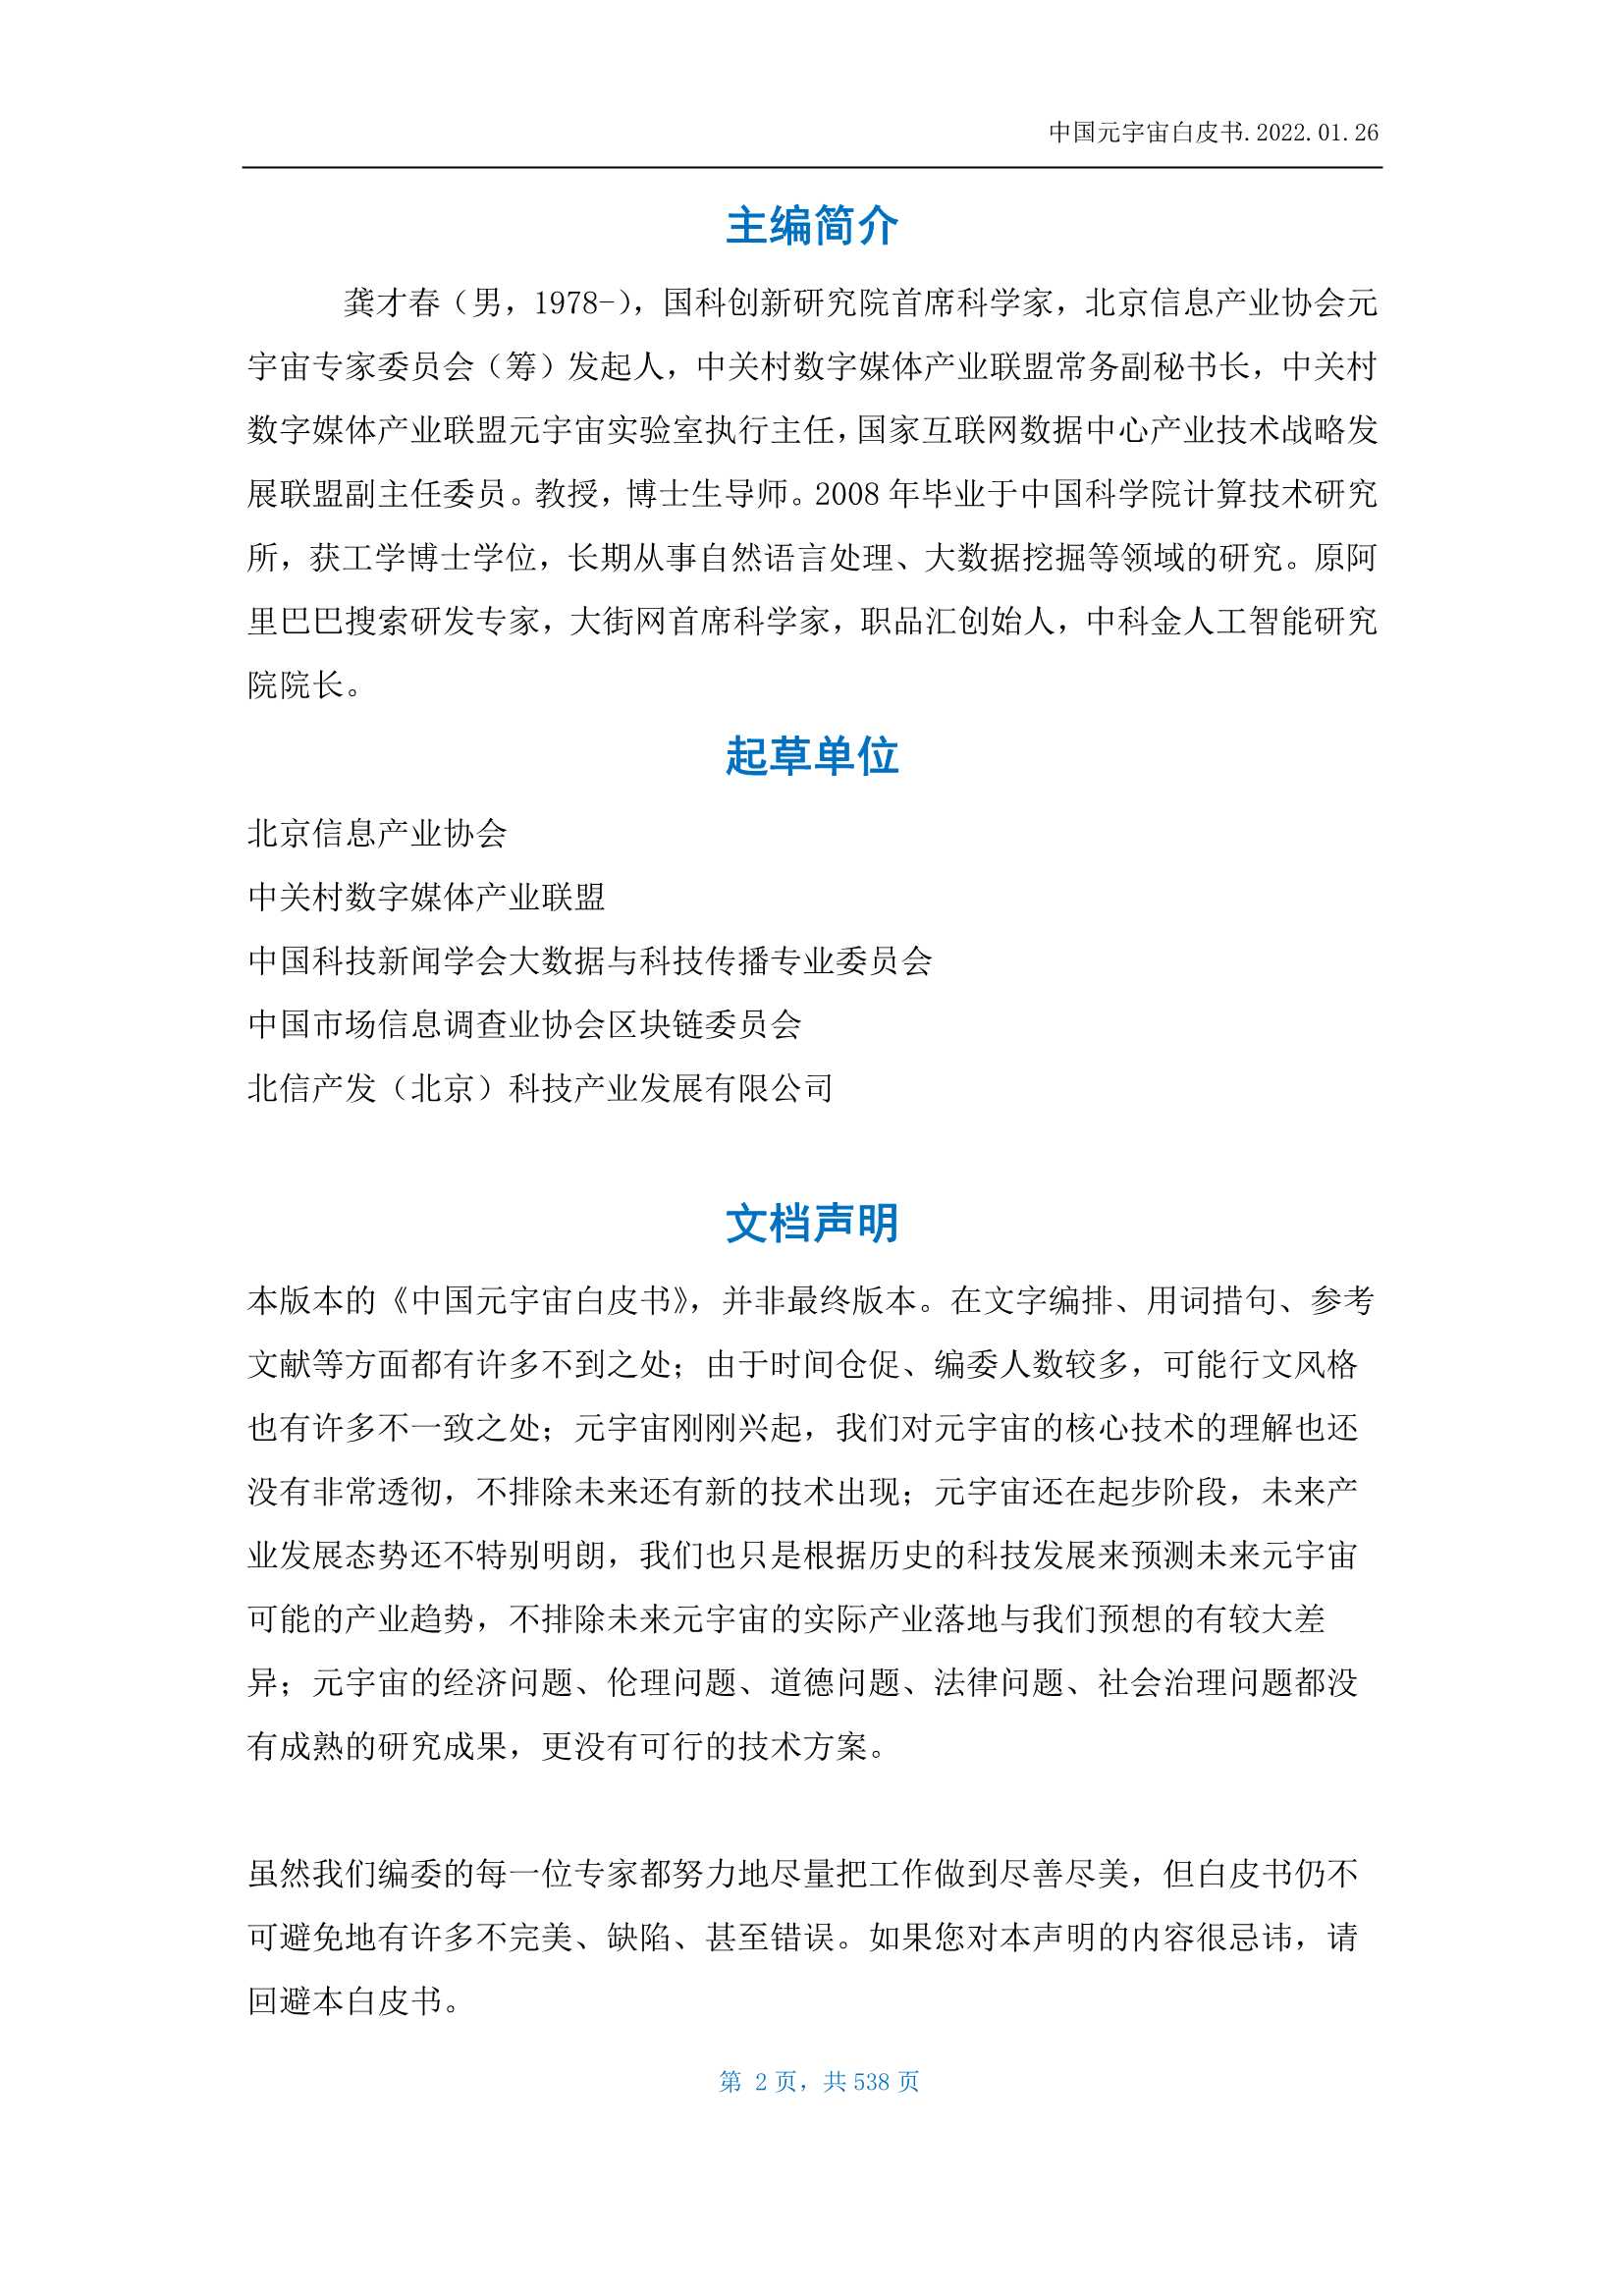 北京信息产业协会-中国元宇宙白皮书-2022.03-538页